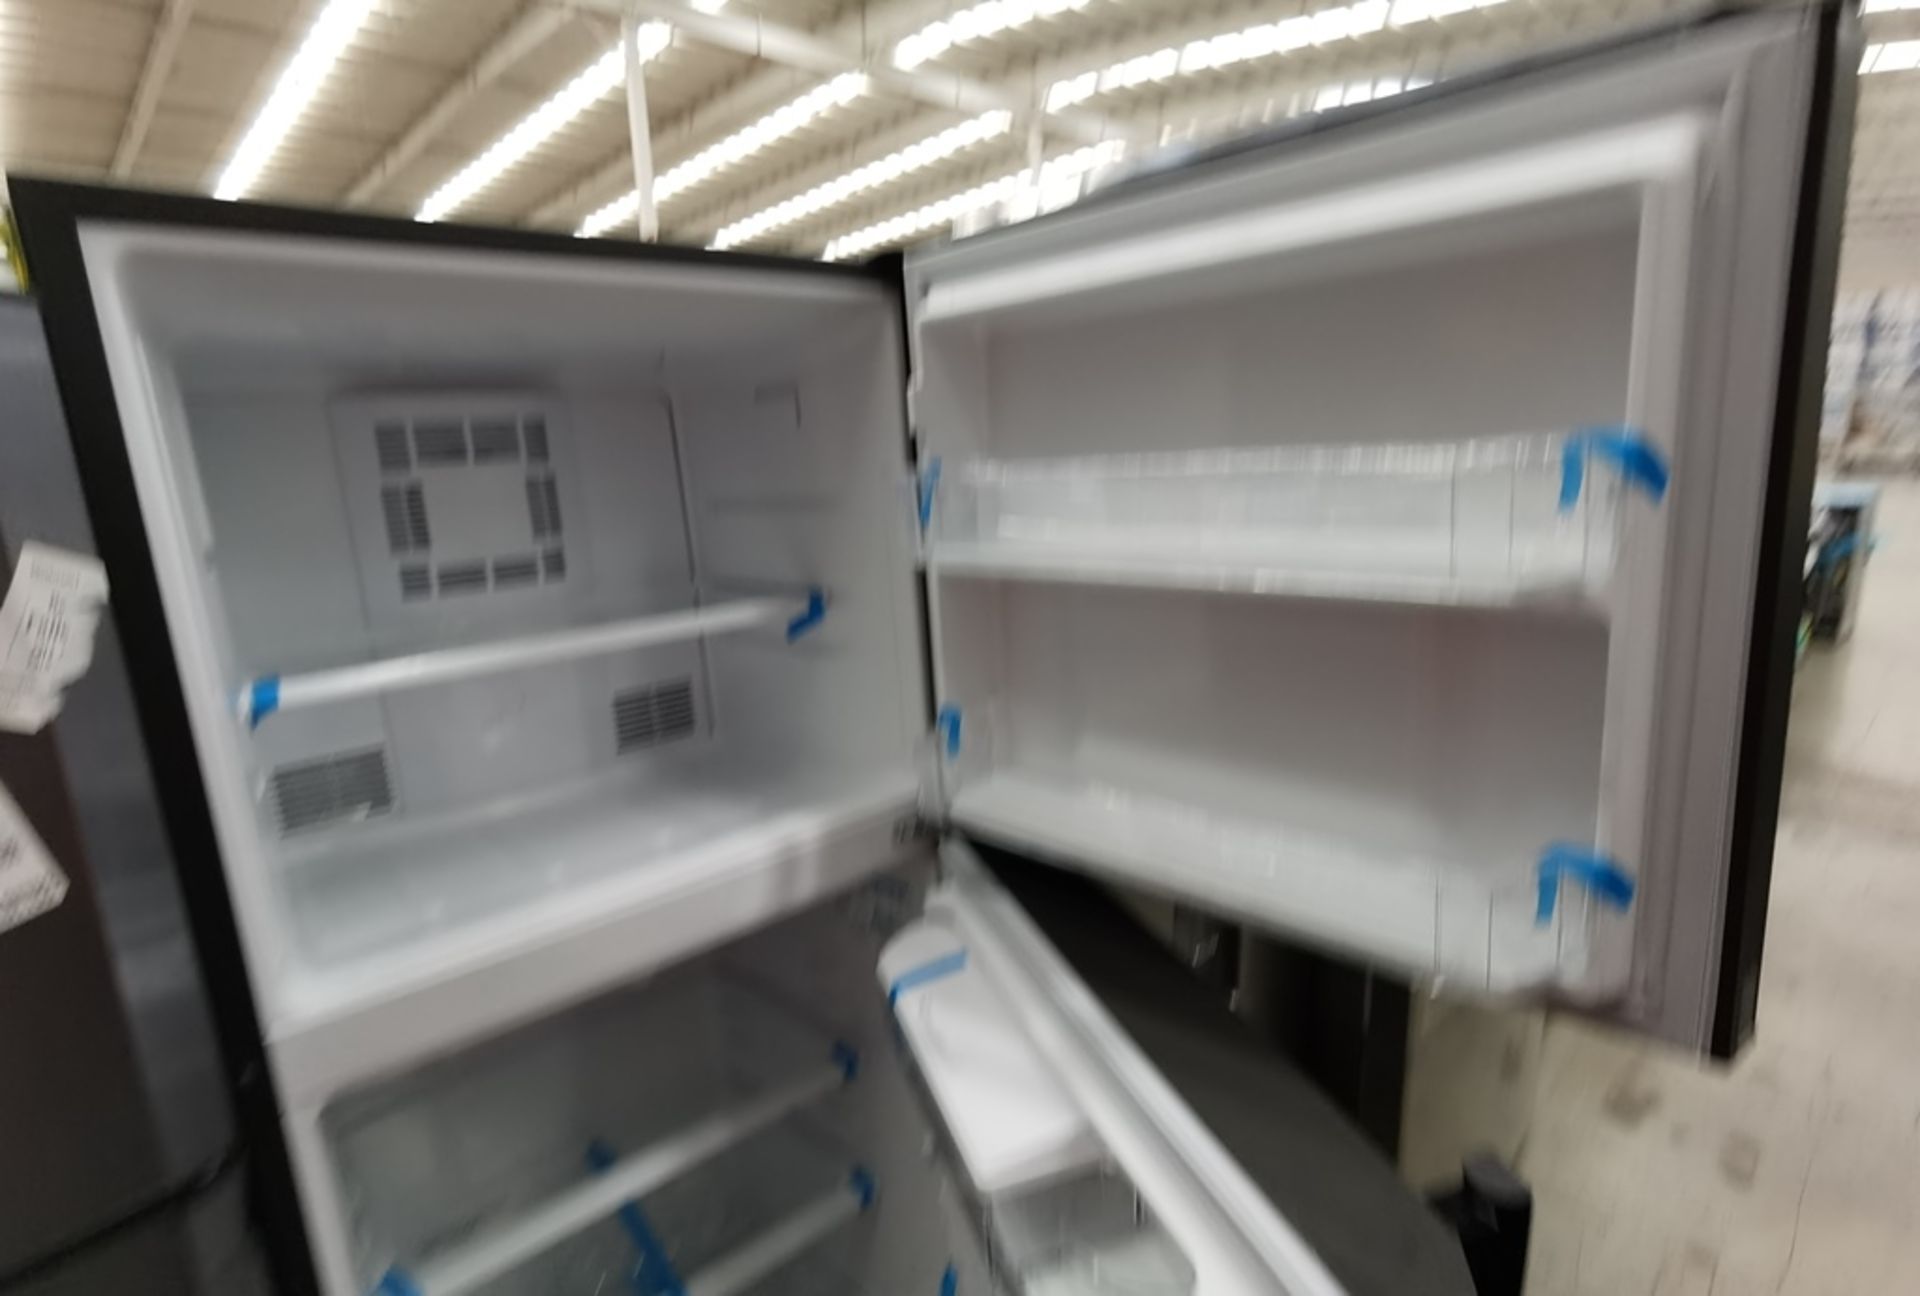 Lote De 2 Refrigeradores Contiene: 1 Refrigerador Marca Mabe, Modelo RME360FD, Serie 2205B503535, C - Image 8 of 17